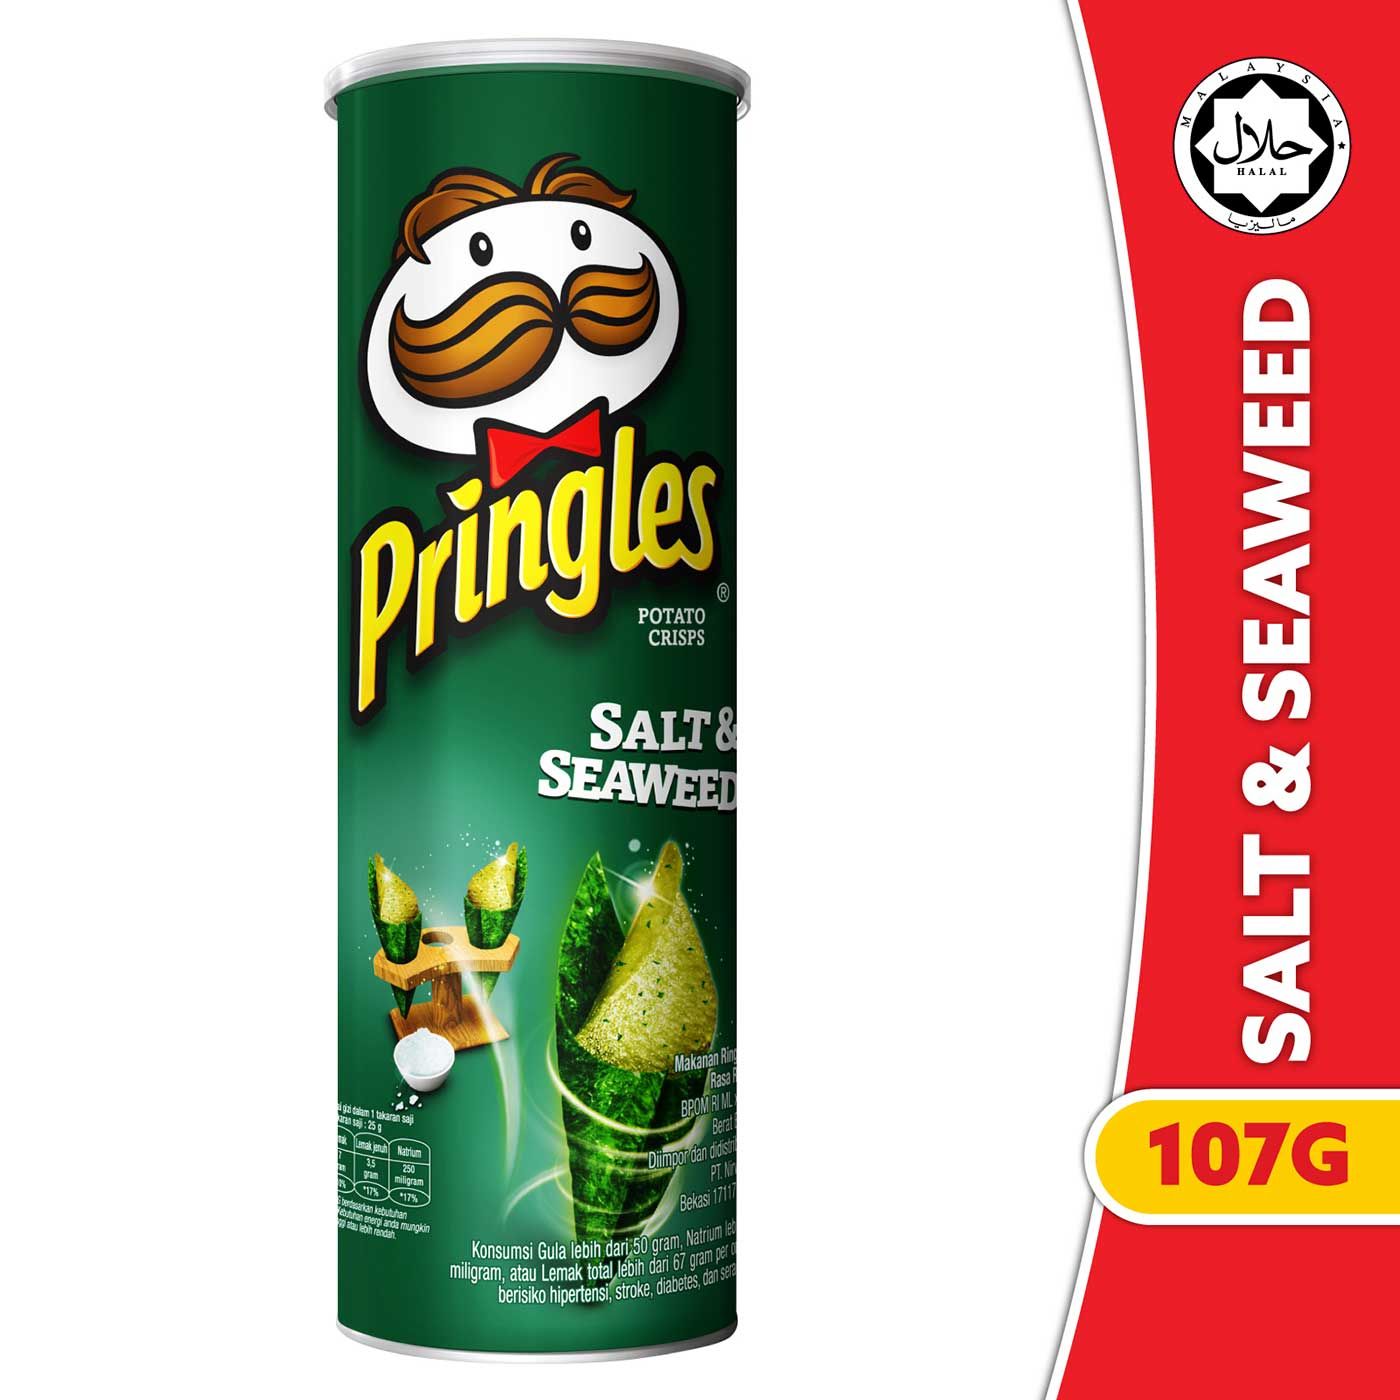 [CARTON DEALS] Pringles Salt & Seaweed 107gr (12 Pcs) - 2